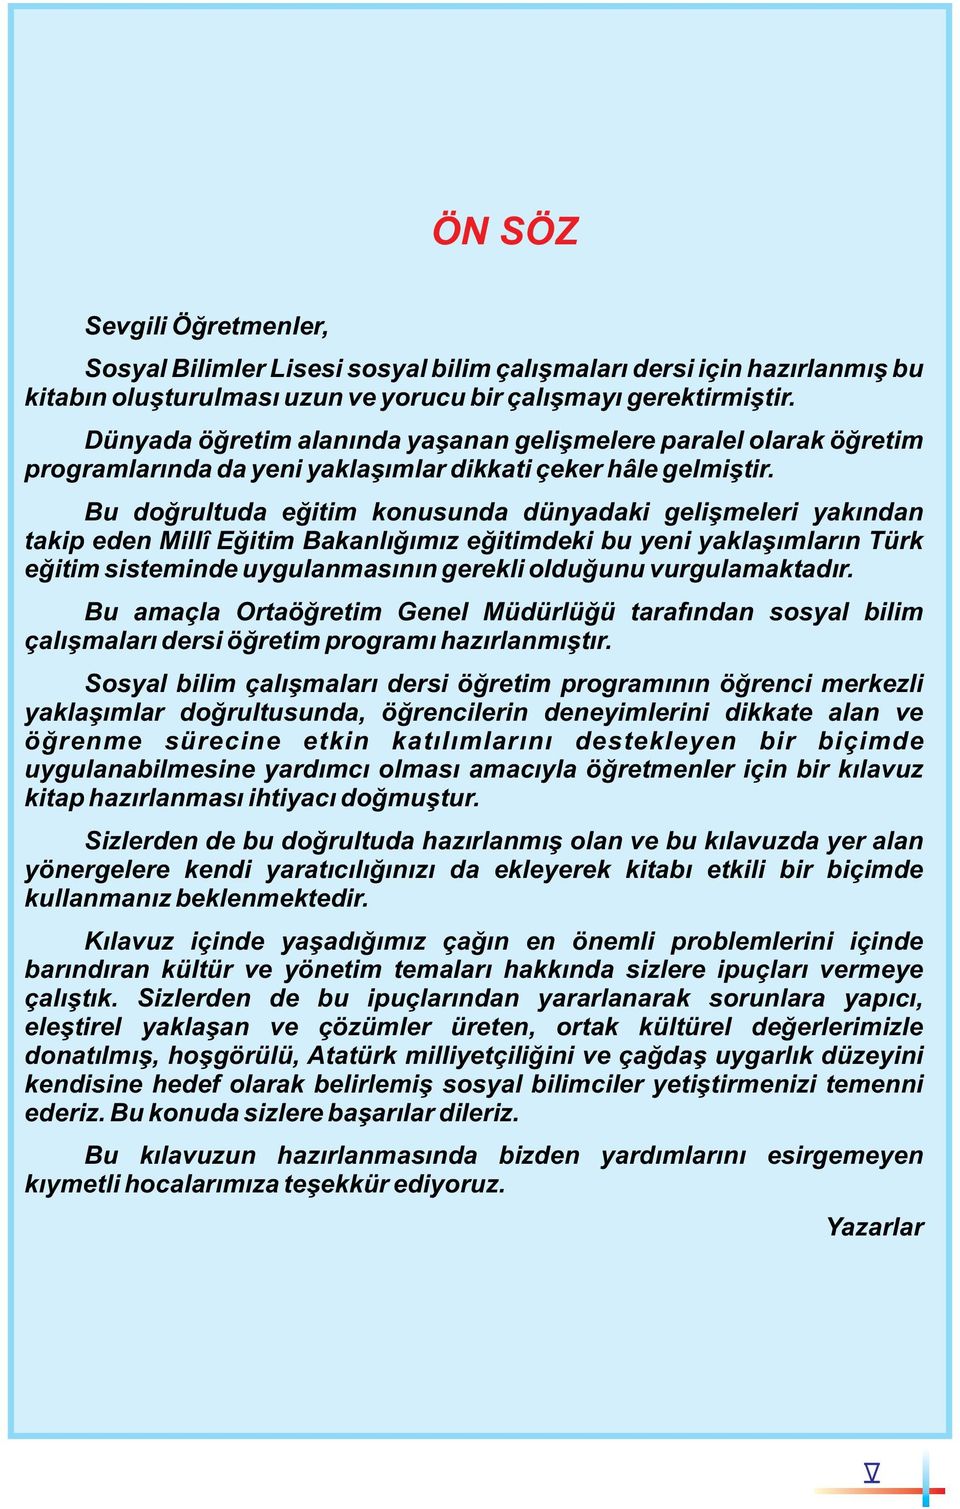 Bu doğrultuda eğitim konusunda dünyadaki gelişmeleri yakından takip eden Millî Eğitim Bakanlığımız eğitimdeki bu yeni yaklaşımların Türk eğitim sisteminde uygulanmasının gerekli olduğunu